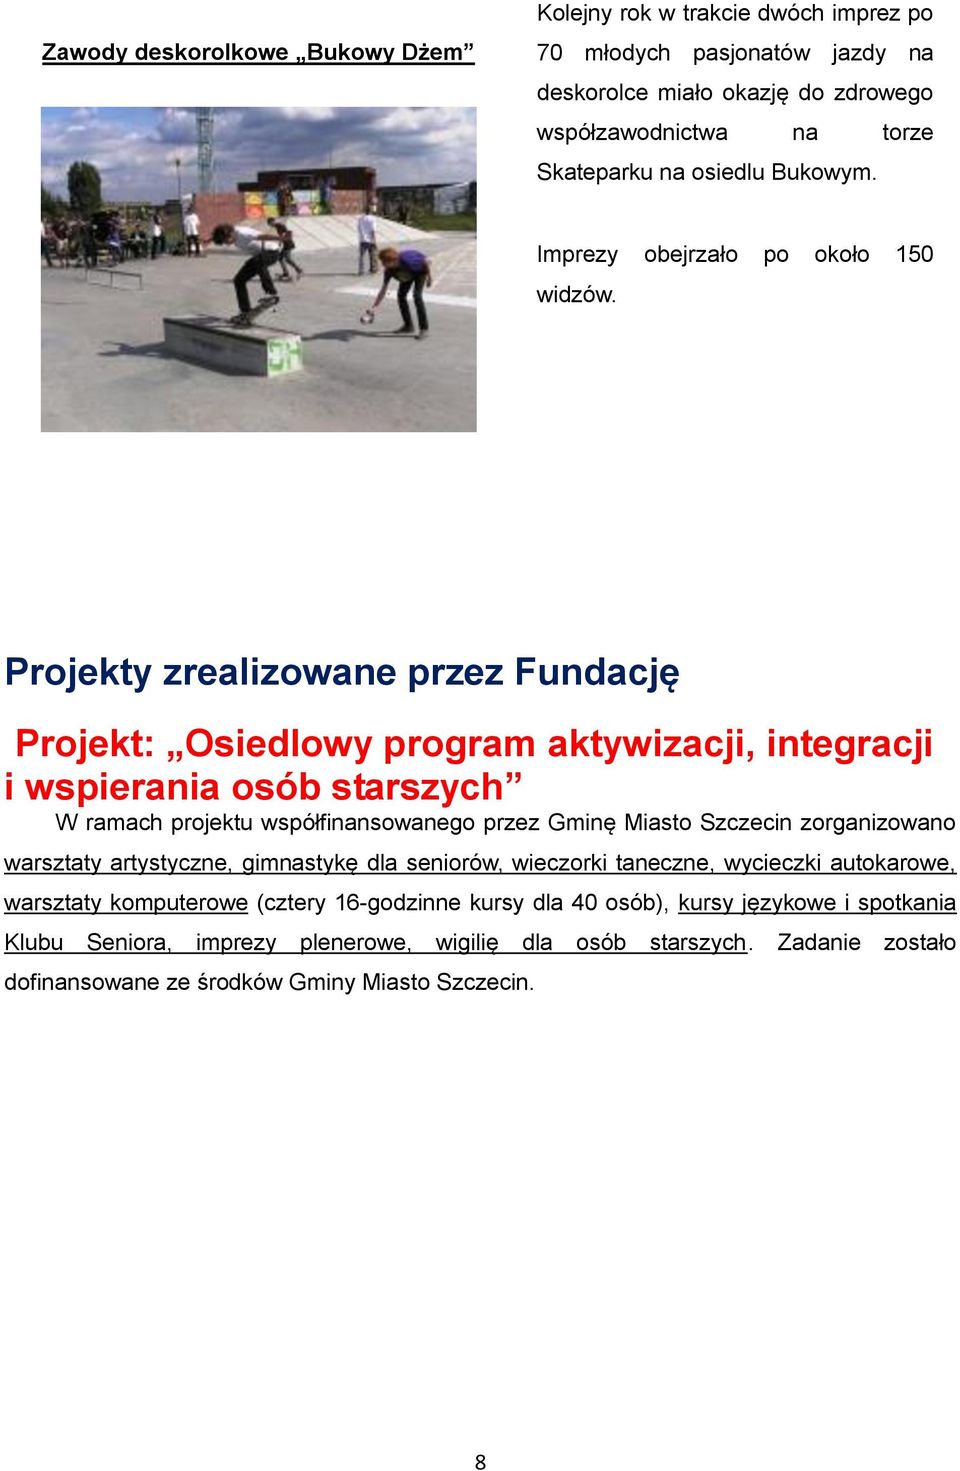 Projekty zrealizowane przez Fundację Projekt: Osiedlowy program aktywizacji, integracji i wspierania osób starszych W ramach projektu współfinansowanego przez Gminę Miasto Szczecin